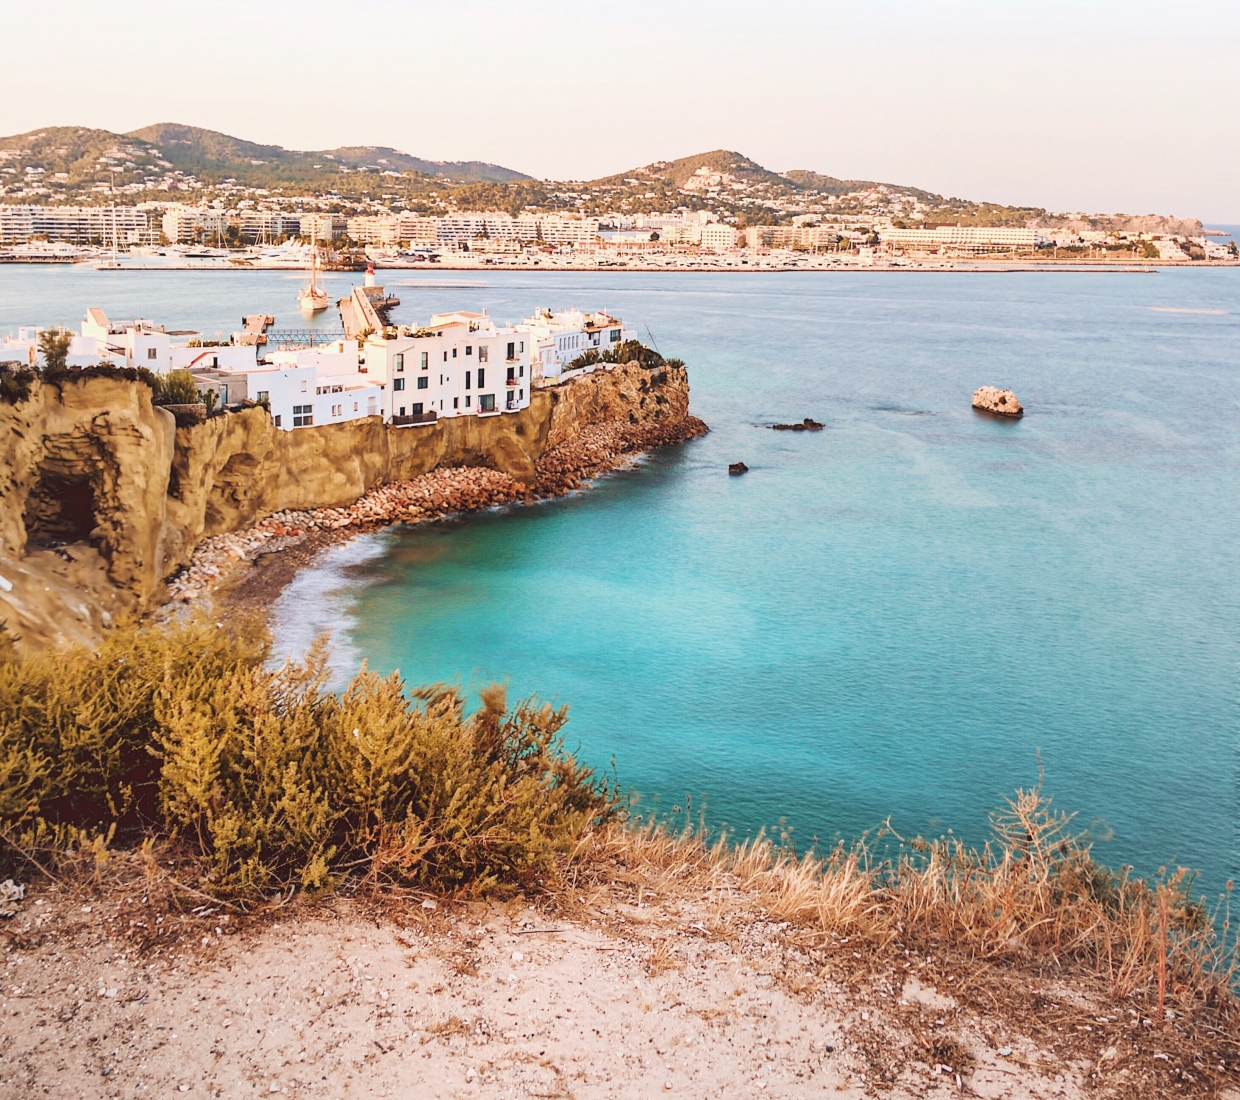 Seleção dos melhores e mais bonitos hotéis e casas de férias em Ibiza